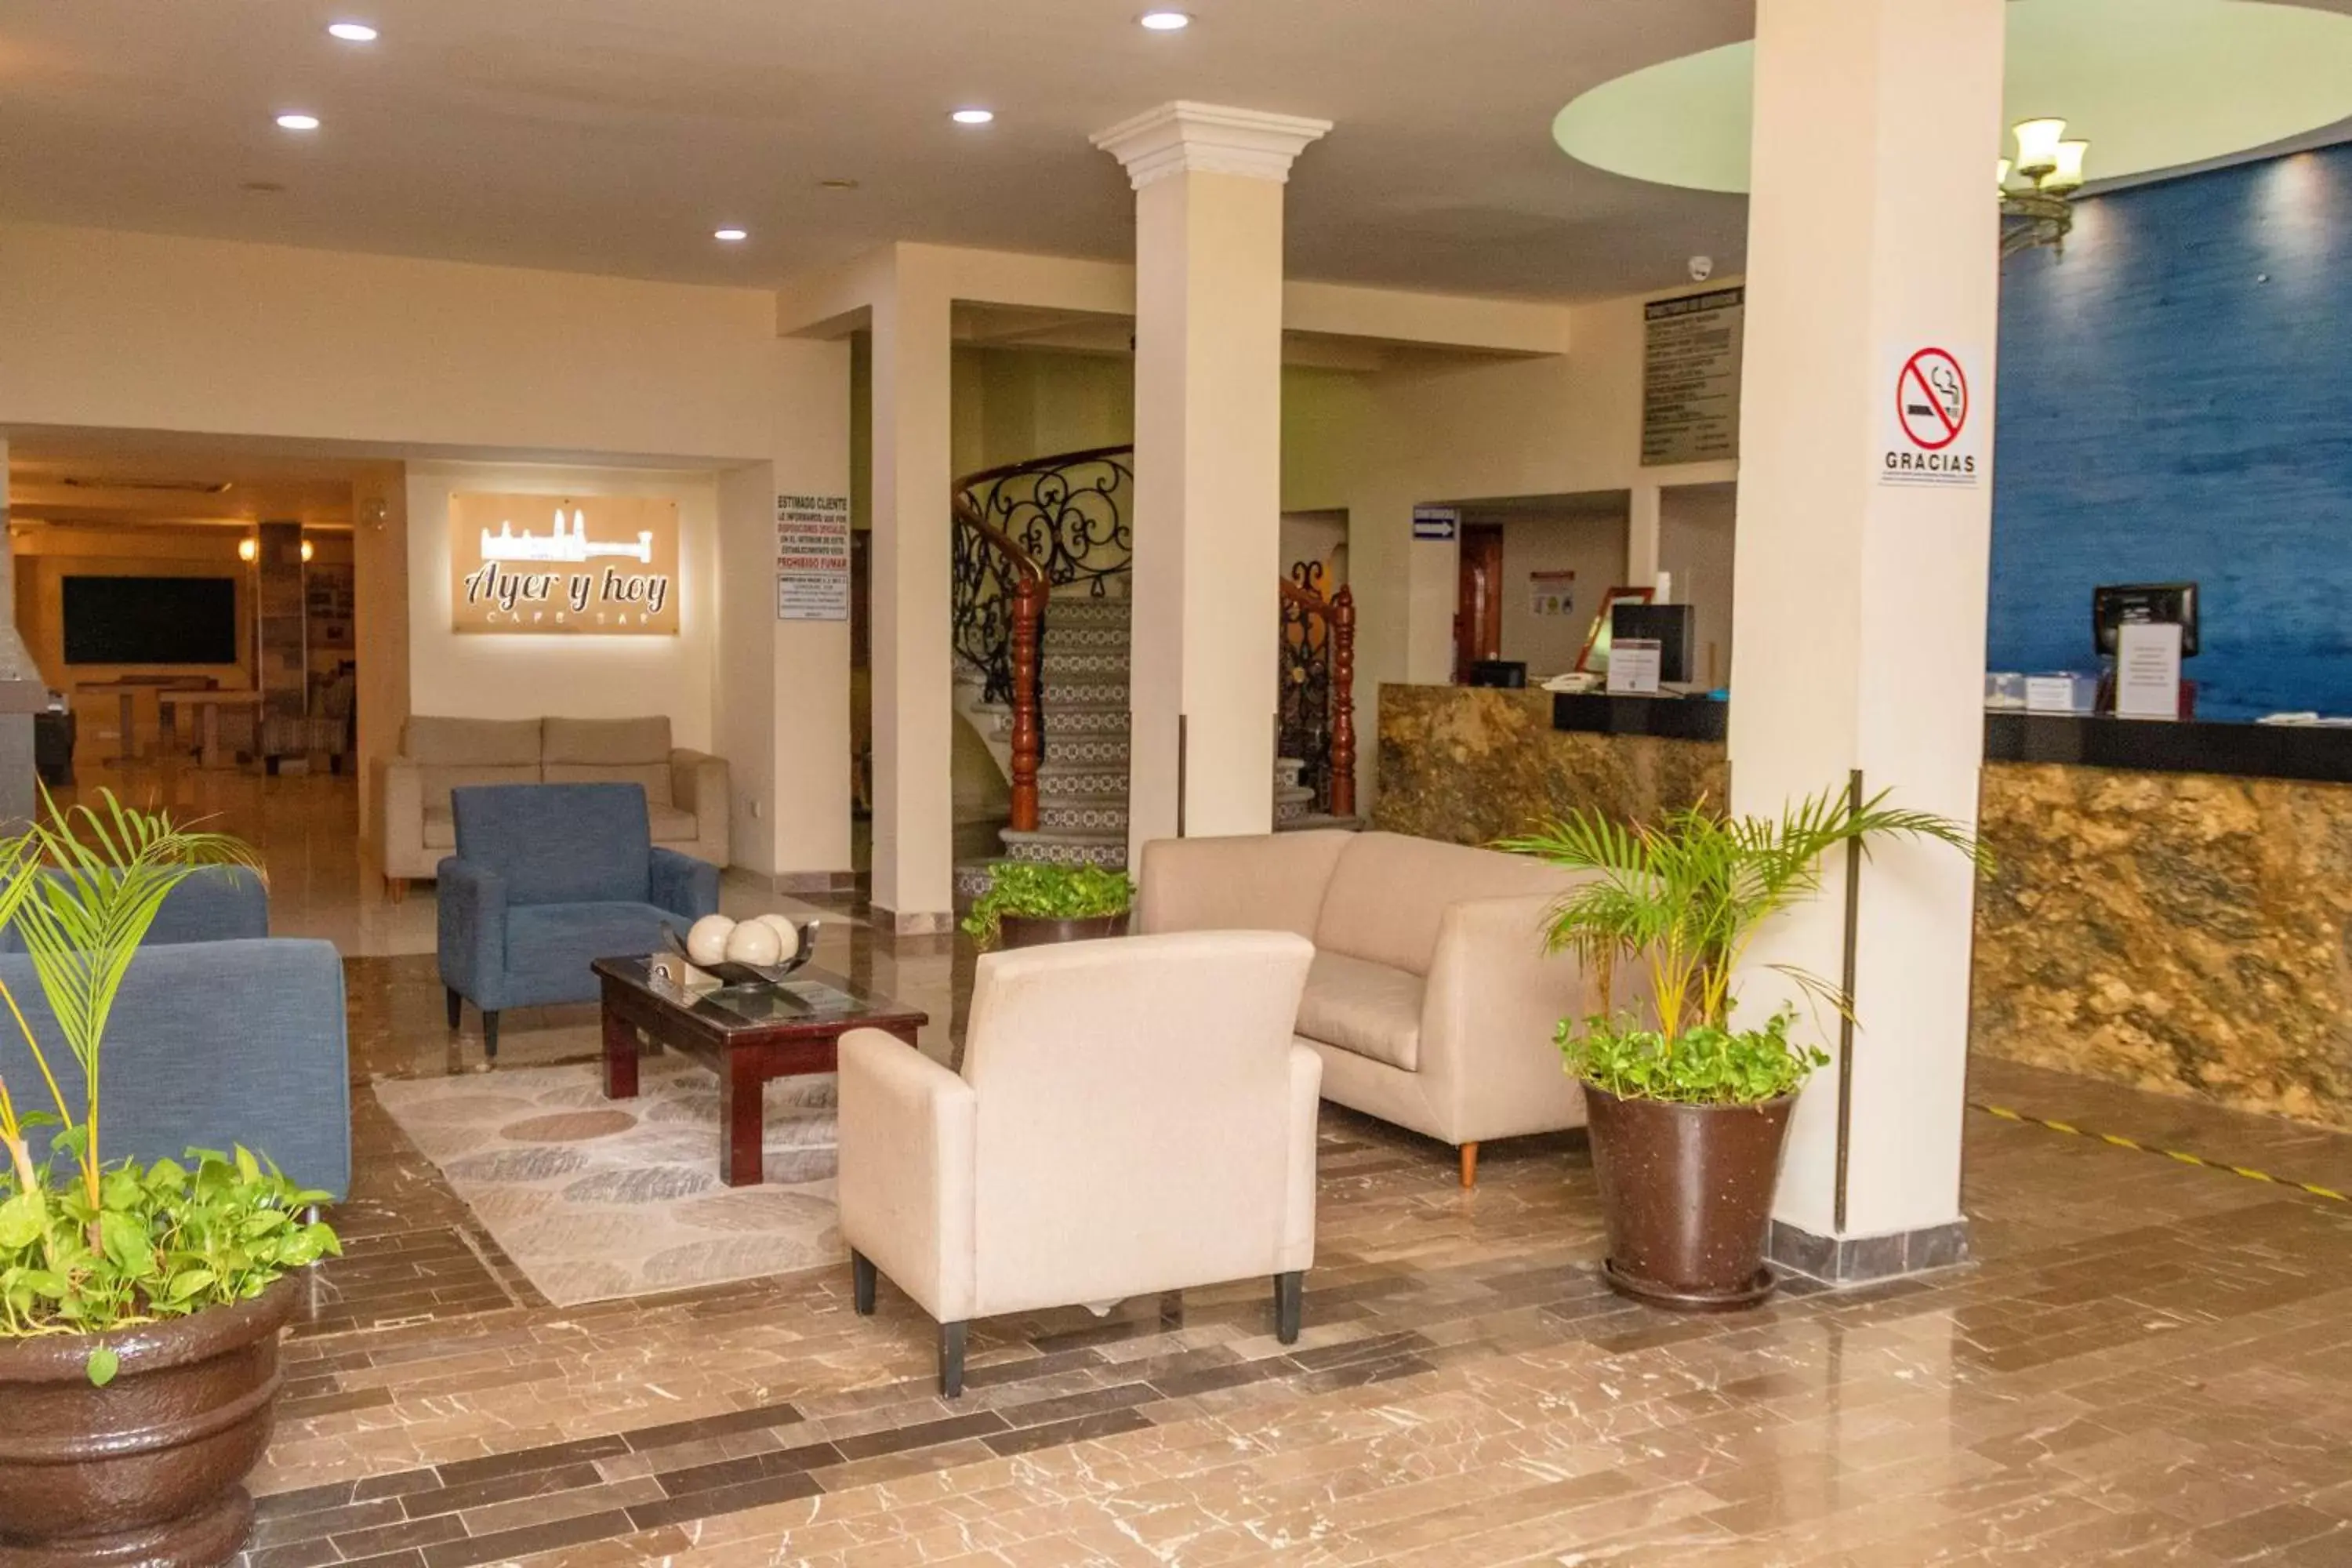 Lobby or reception, Lobby/Reception in Best Western Hotel Madan